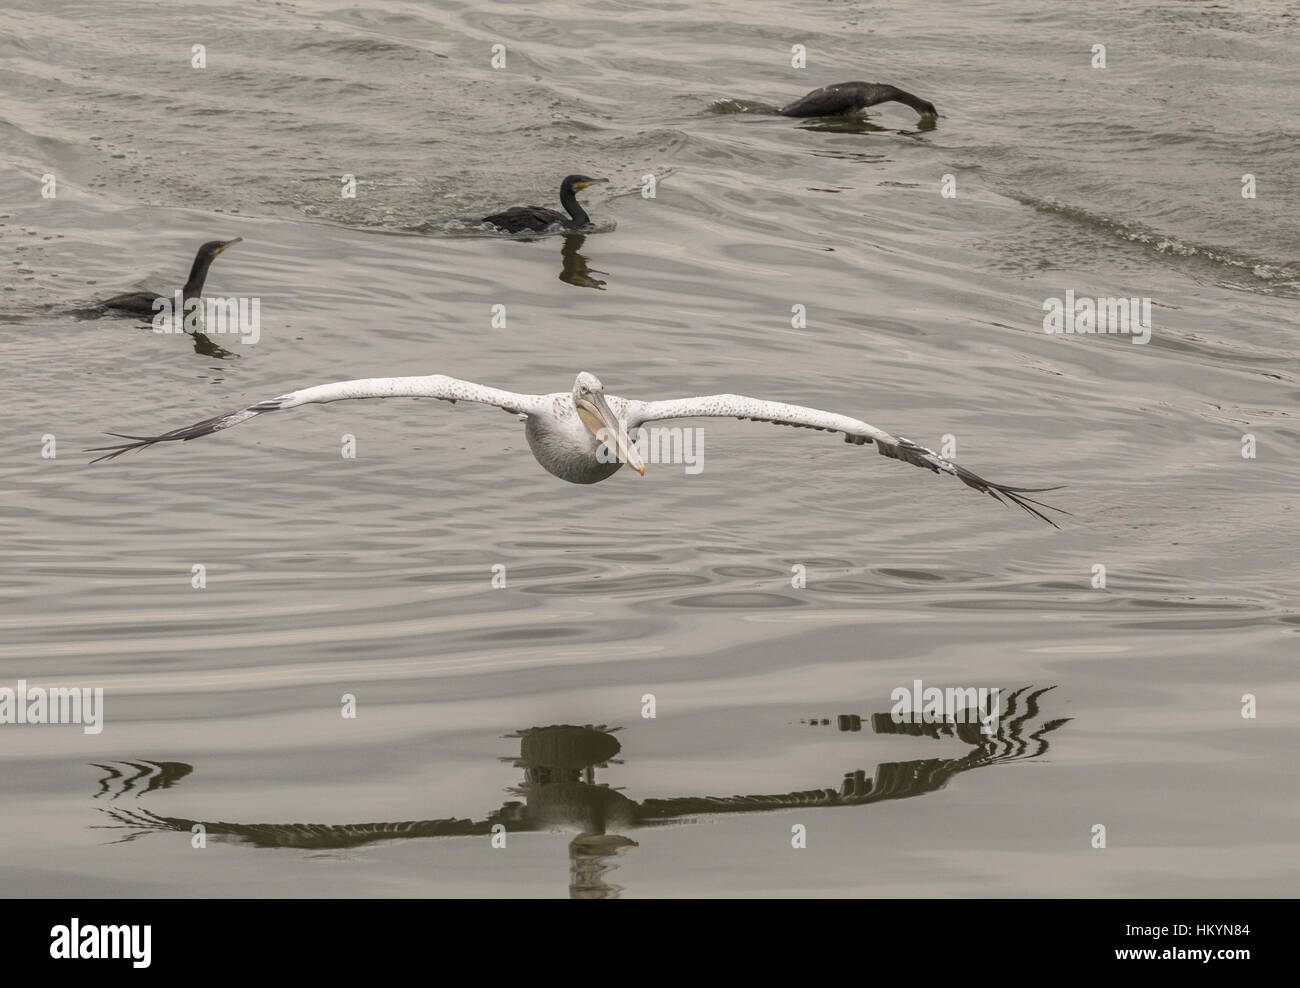 Pelícano blanco entrada en tierra en el lago, persiguiendo un cardumen de peces; el lago Kerkini, Grecia Foto de stock